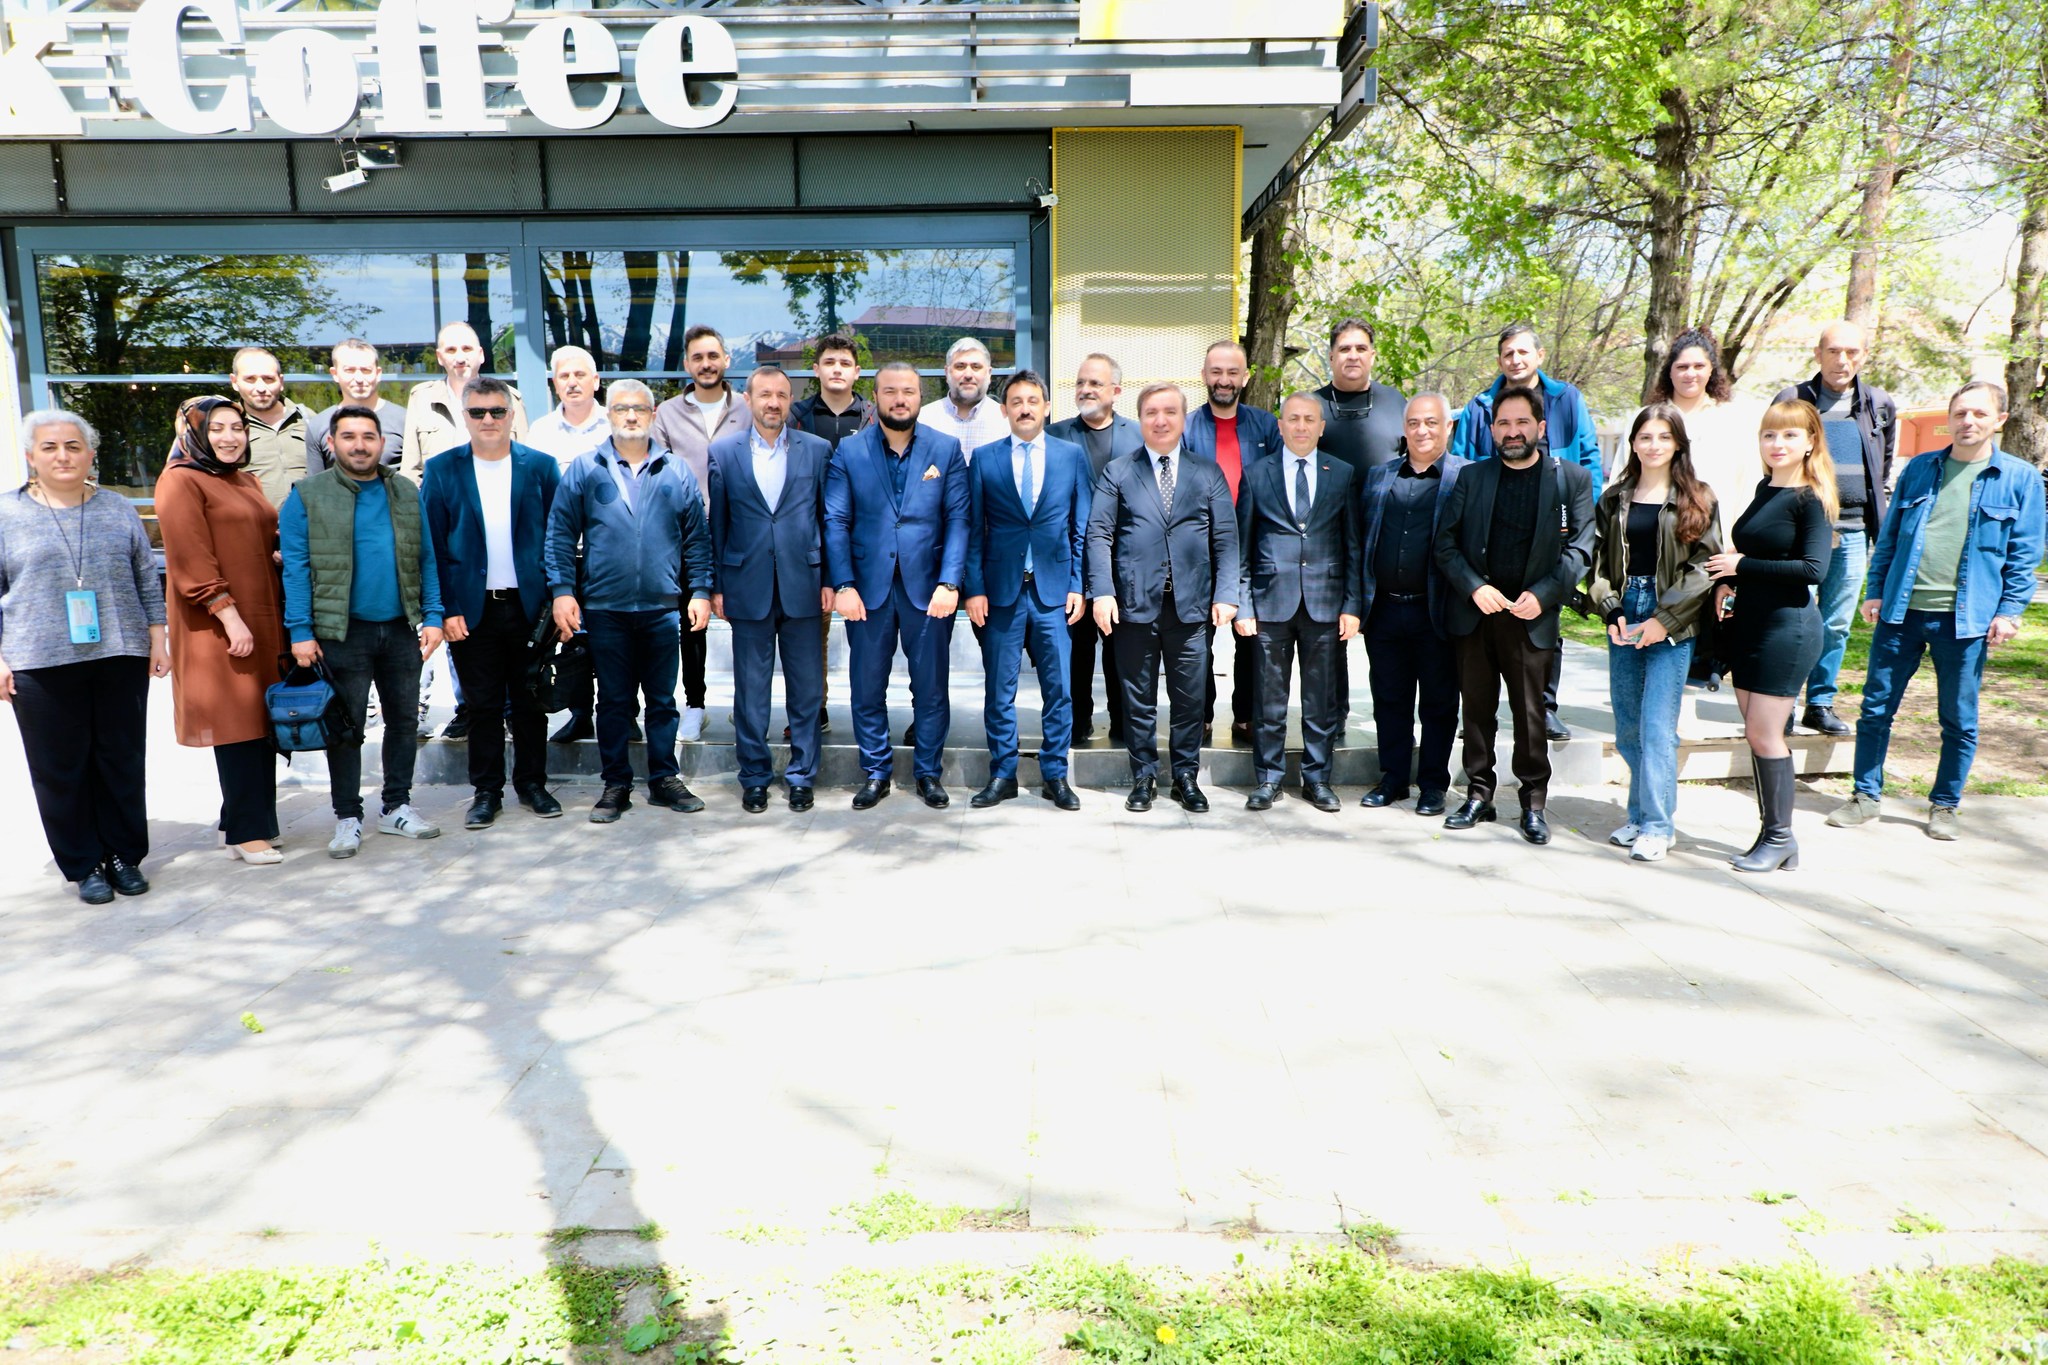 Vali Aydoğdu Erzincan basınına gündemi değerlendirdi